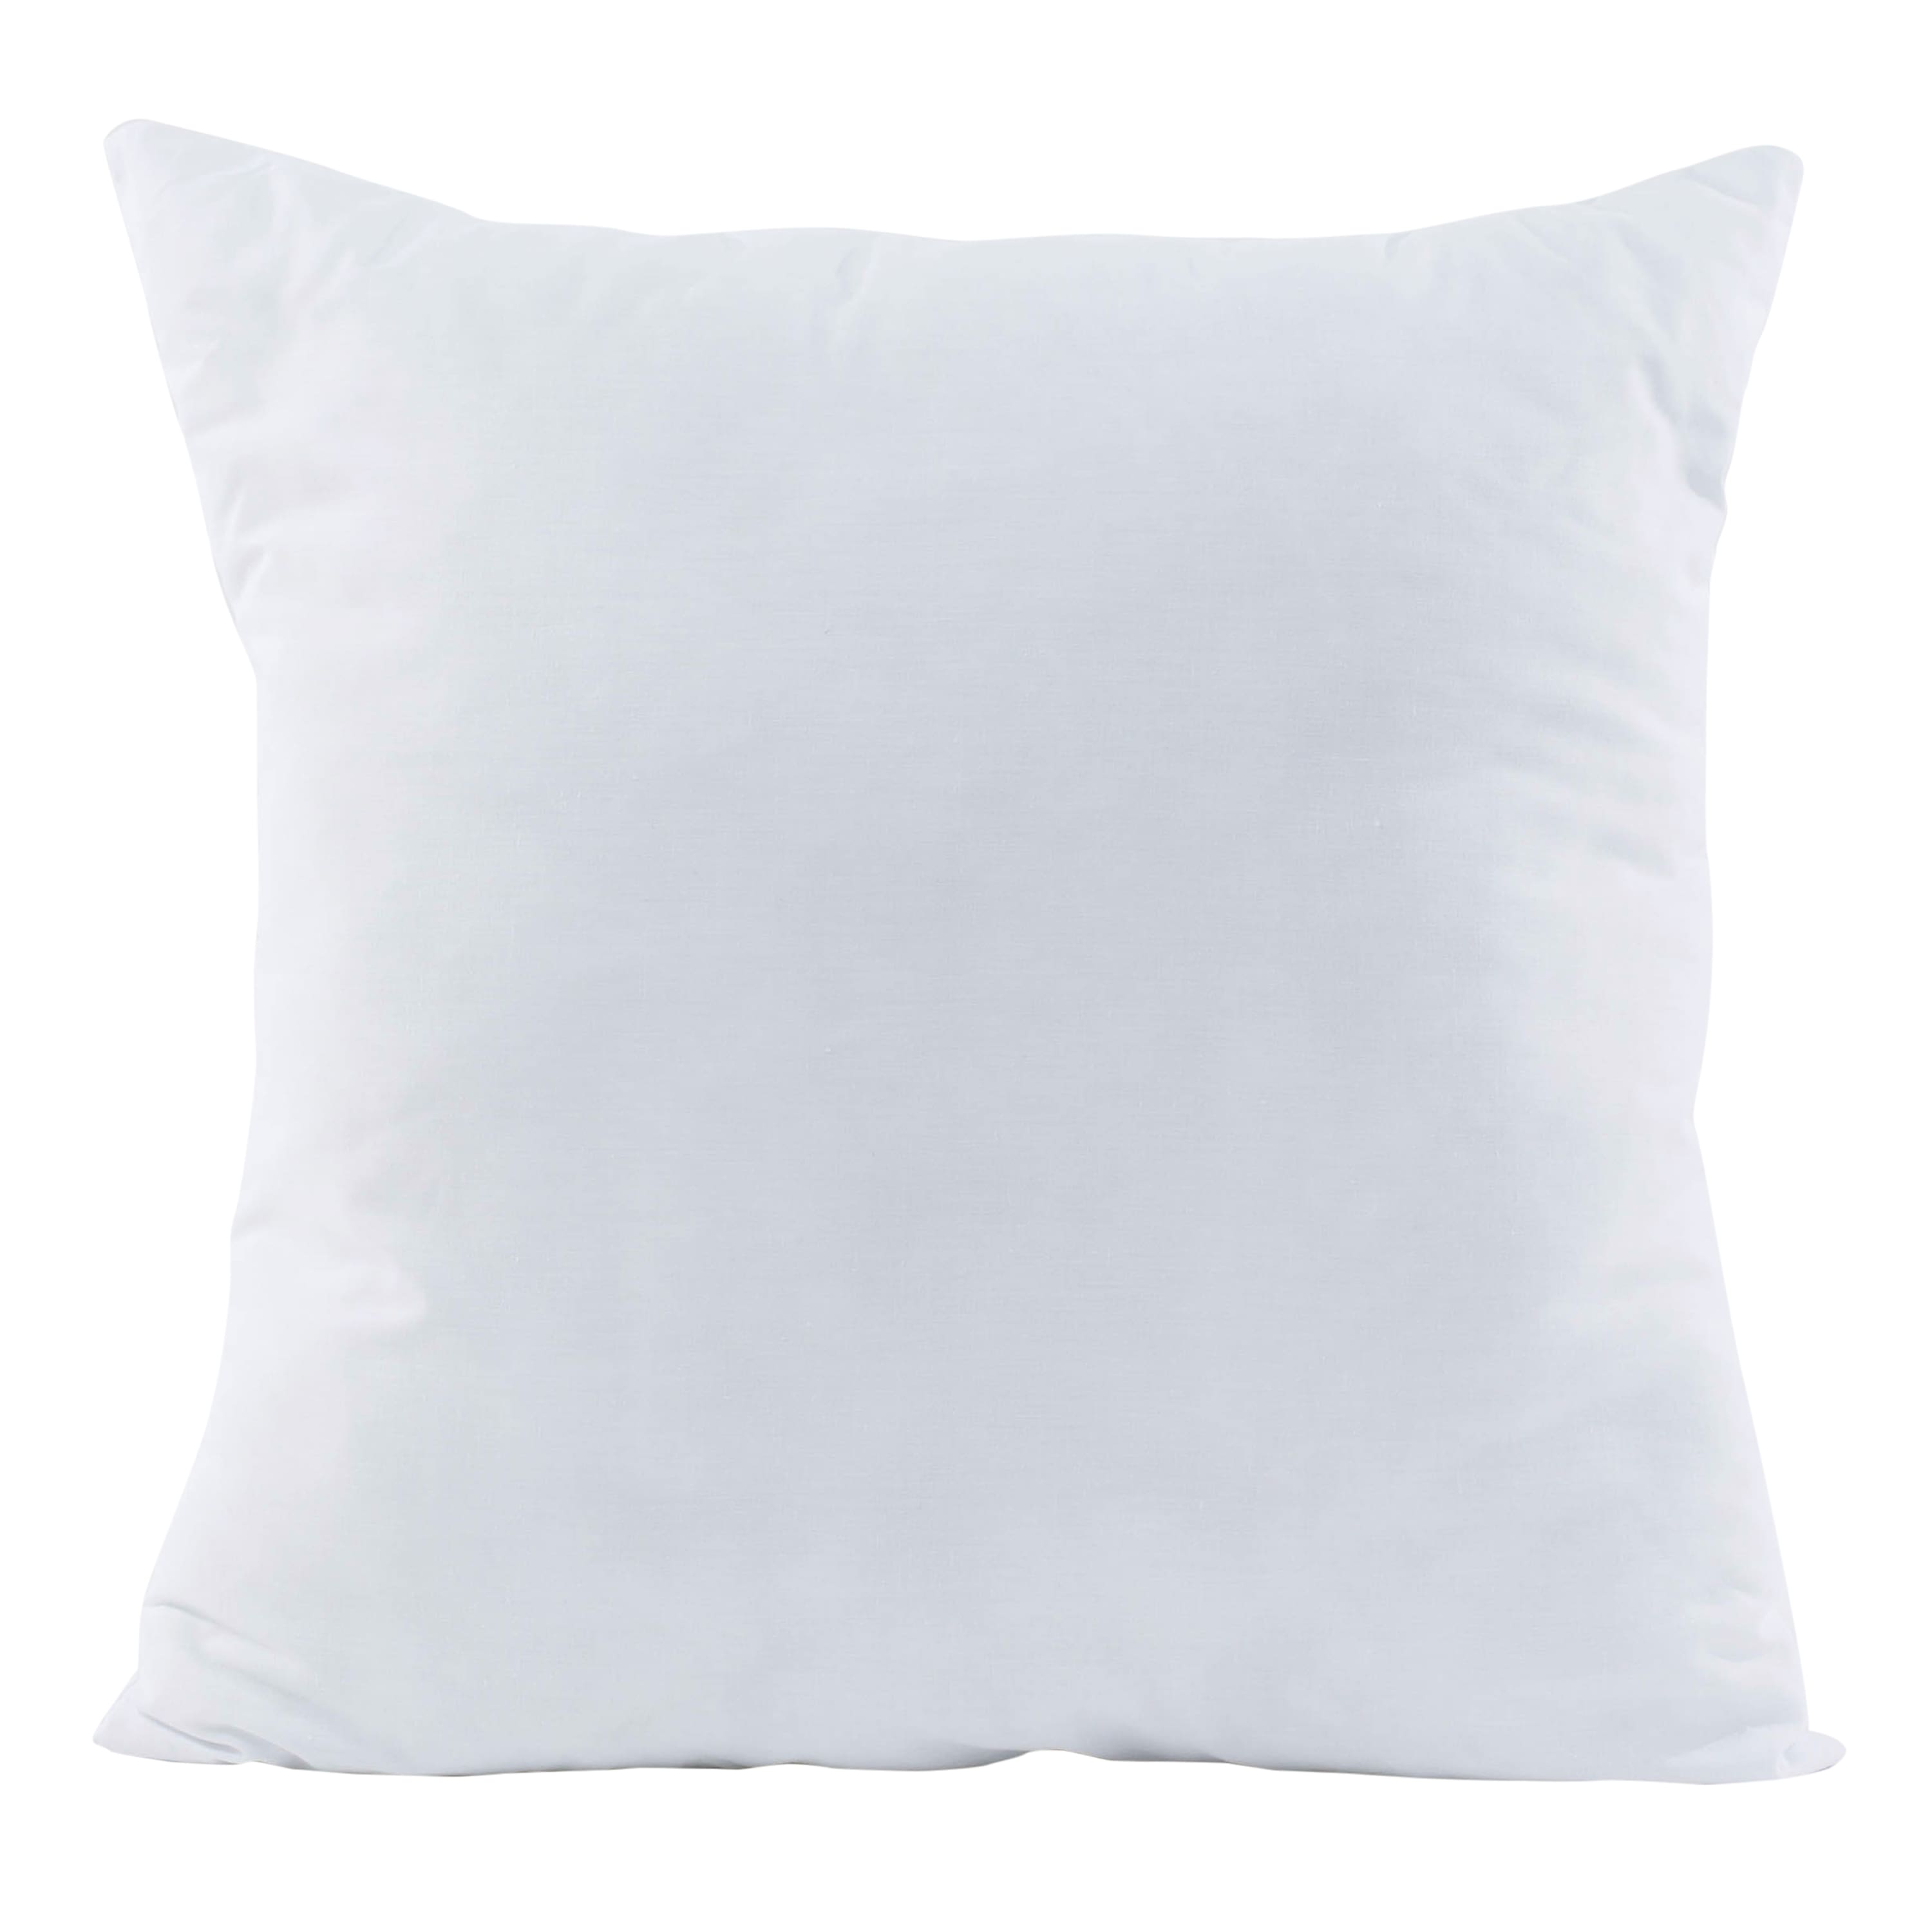 Poly-fil® Premier™ Euro Sham Pillow 